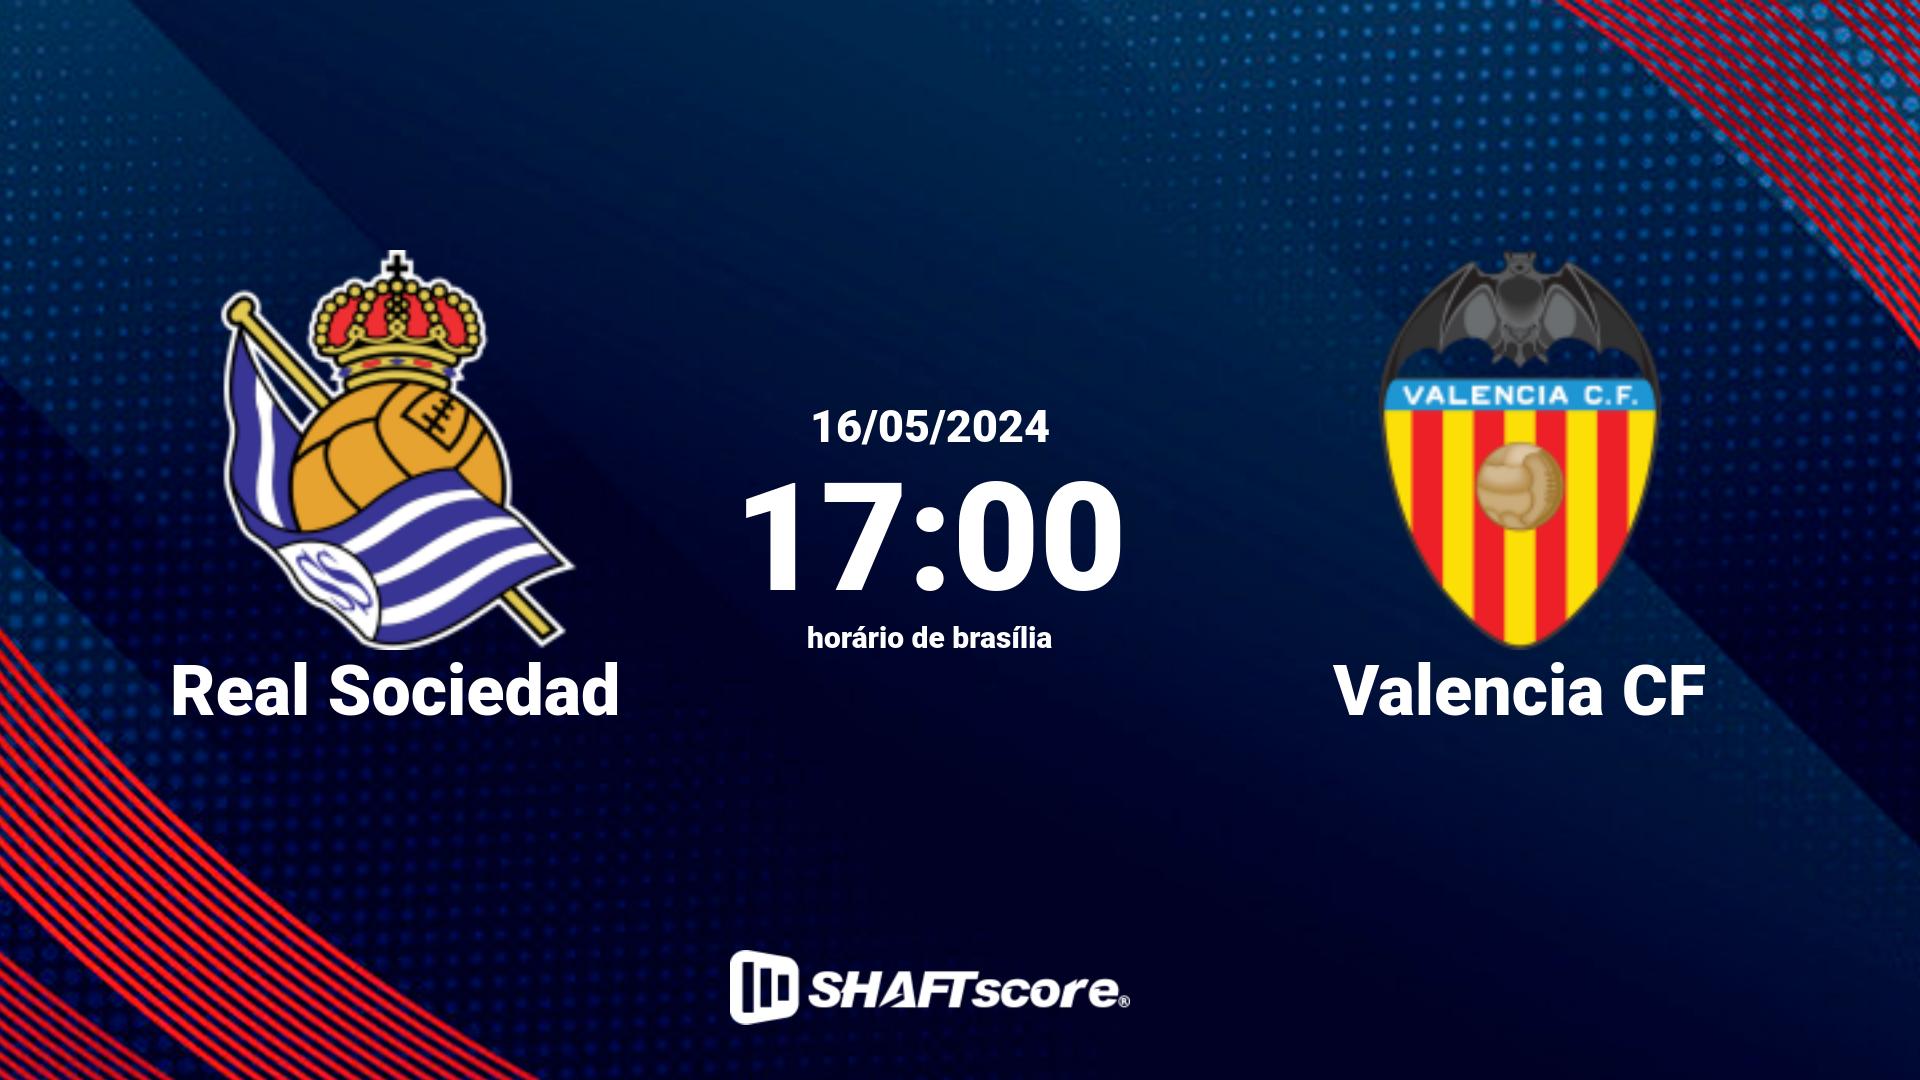 Estatísticas do jogo Real Sociedad vs Valencia CF 16.05 17:00